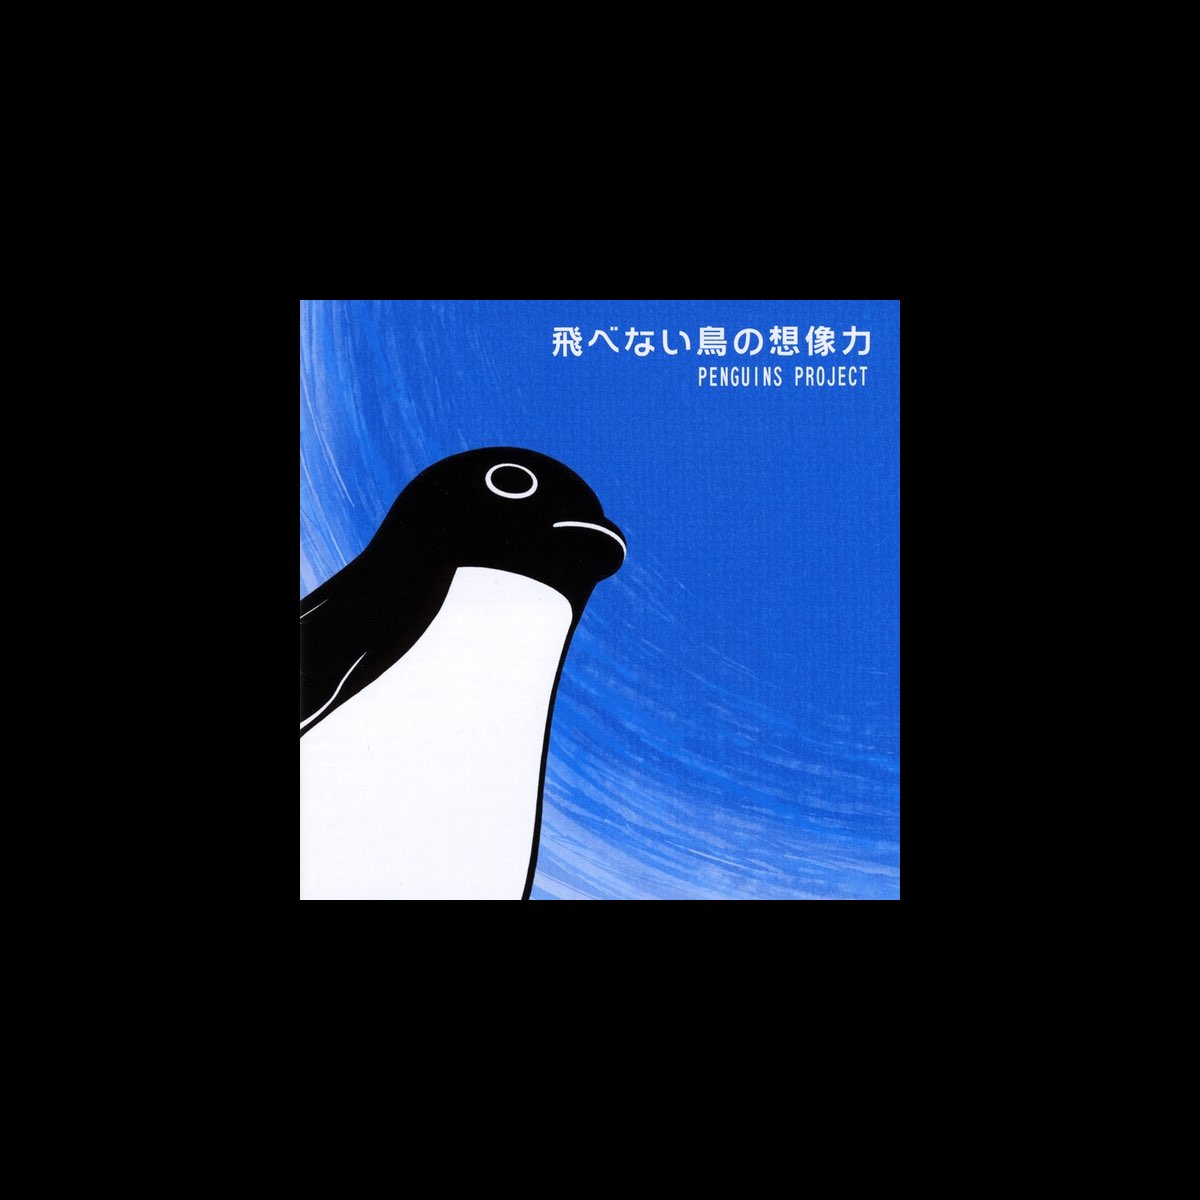 飛べない鳥の想像力 Penguin S Dream By Penguins Project On Apple Music